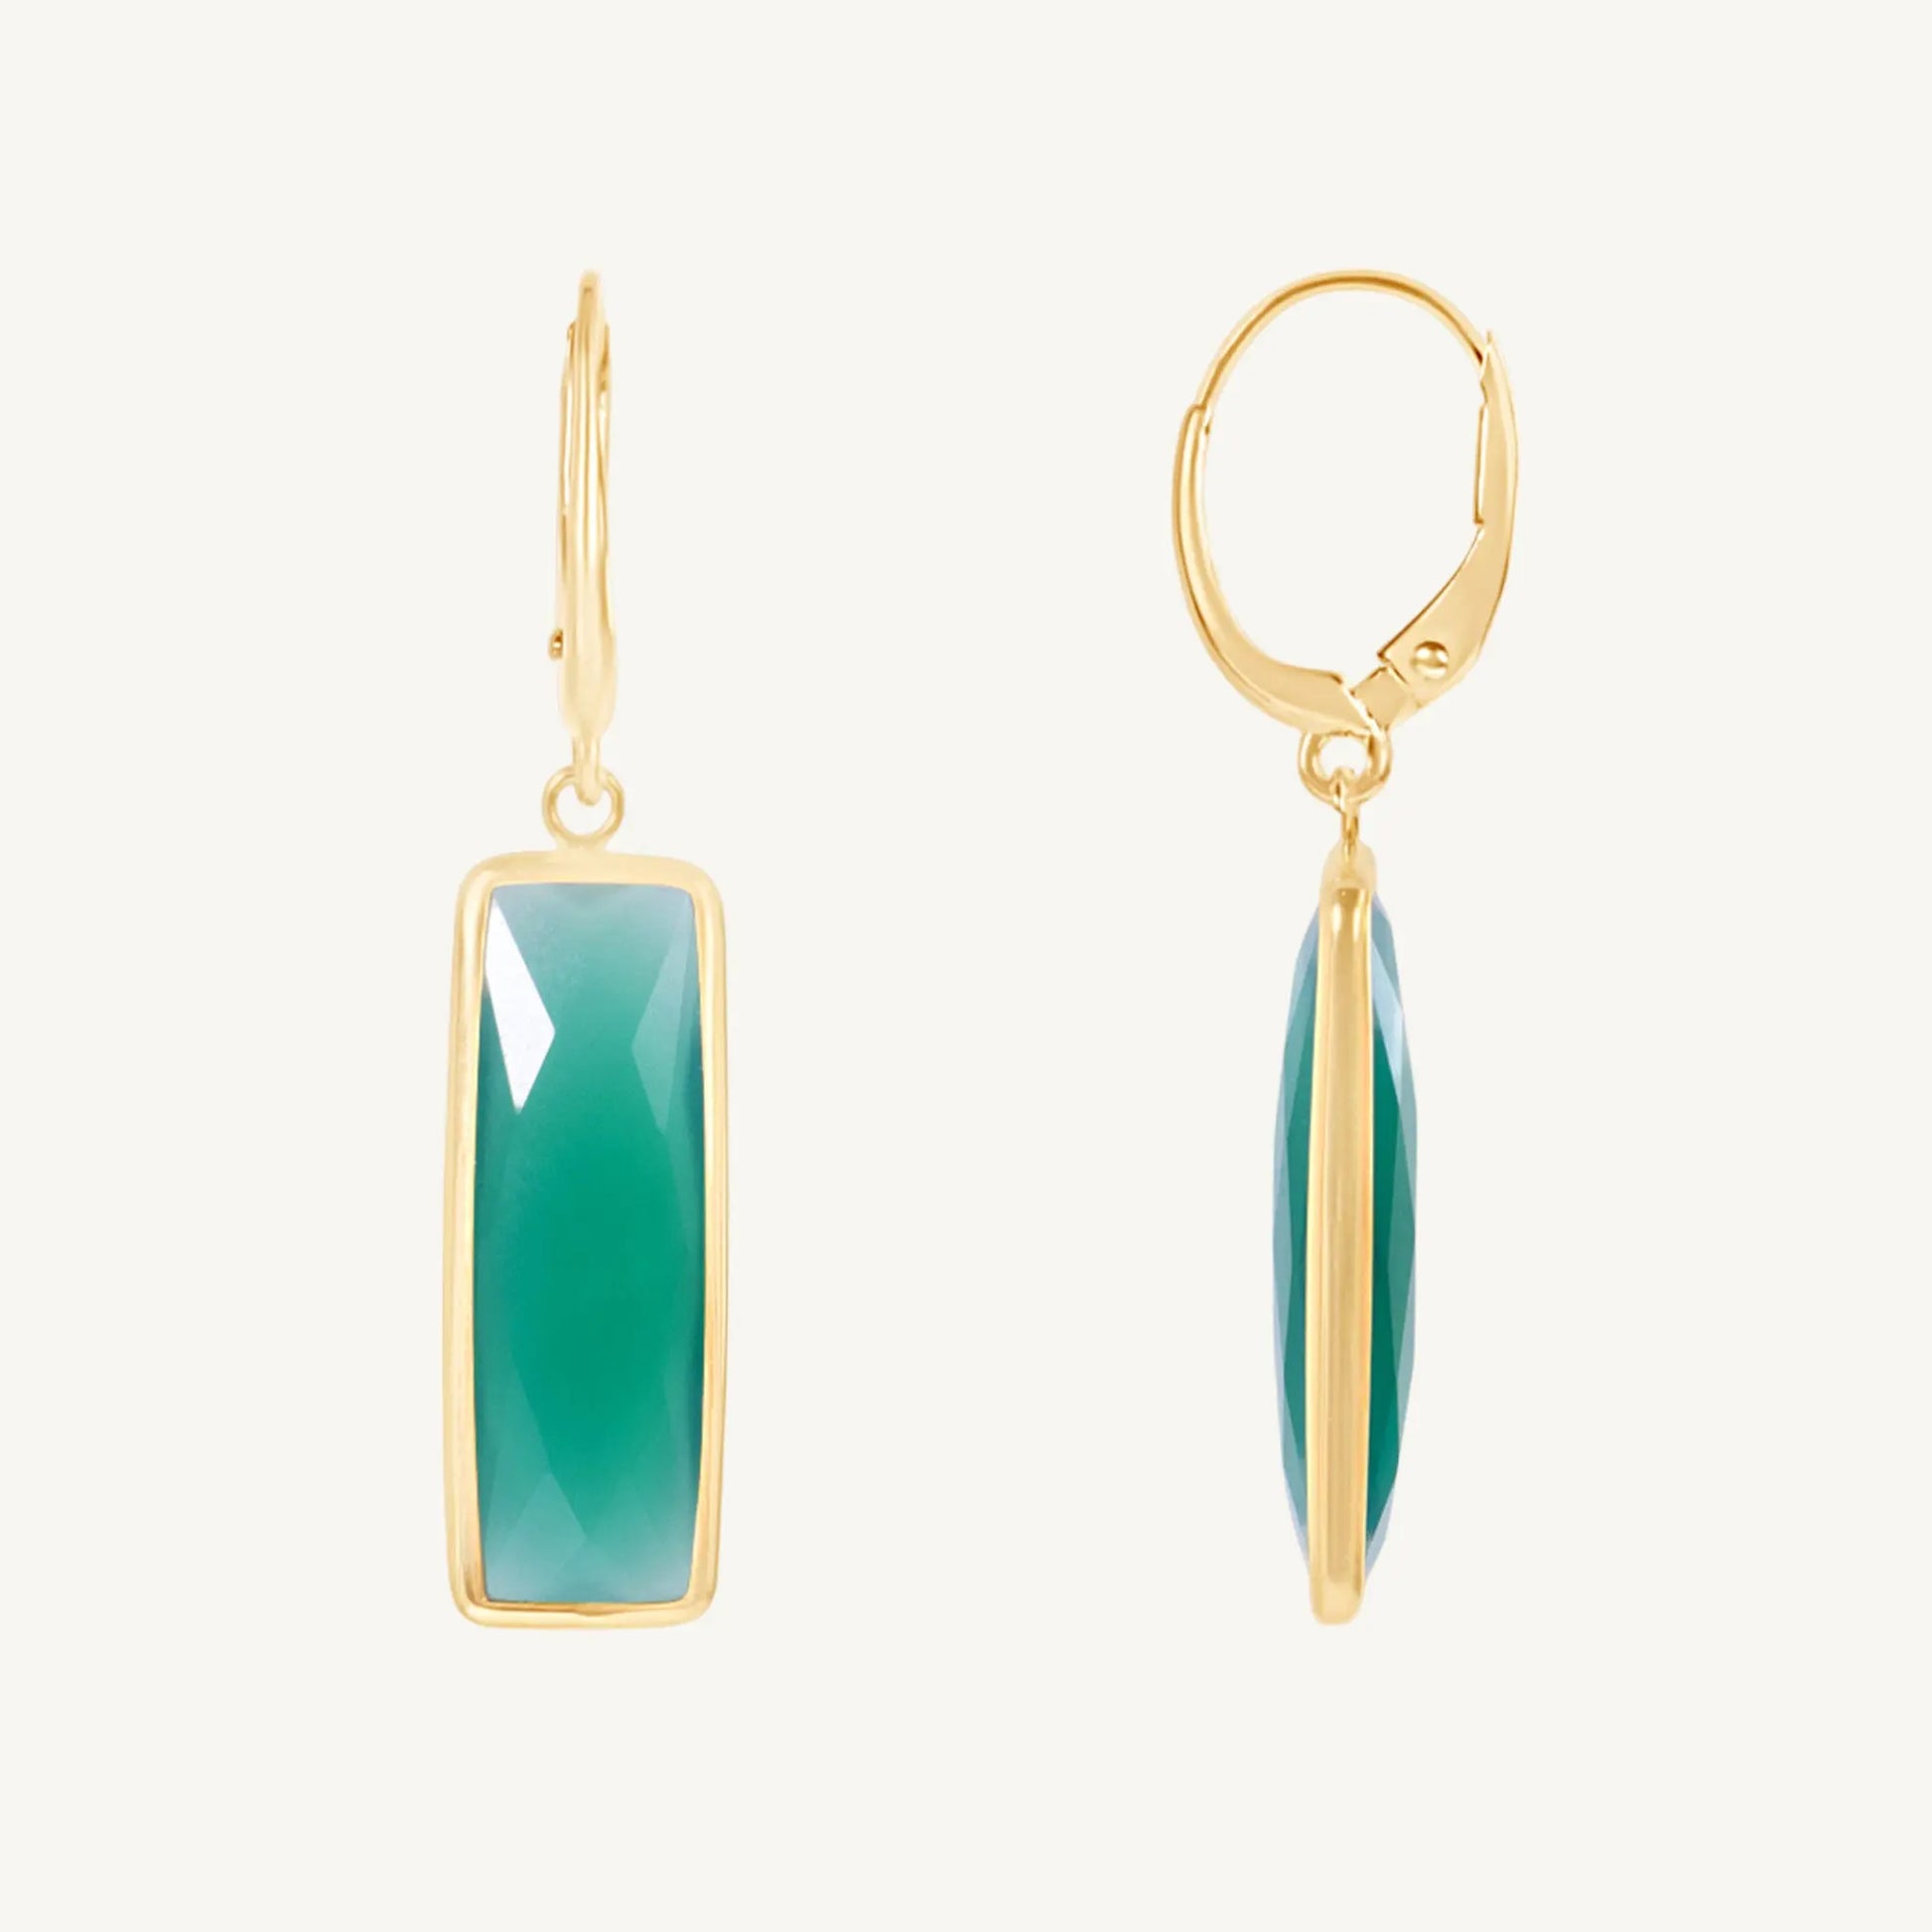 Merrell Green Onyx Earrings Jewelmak Shop